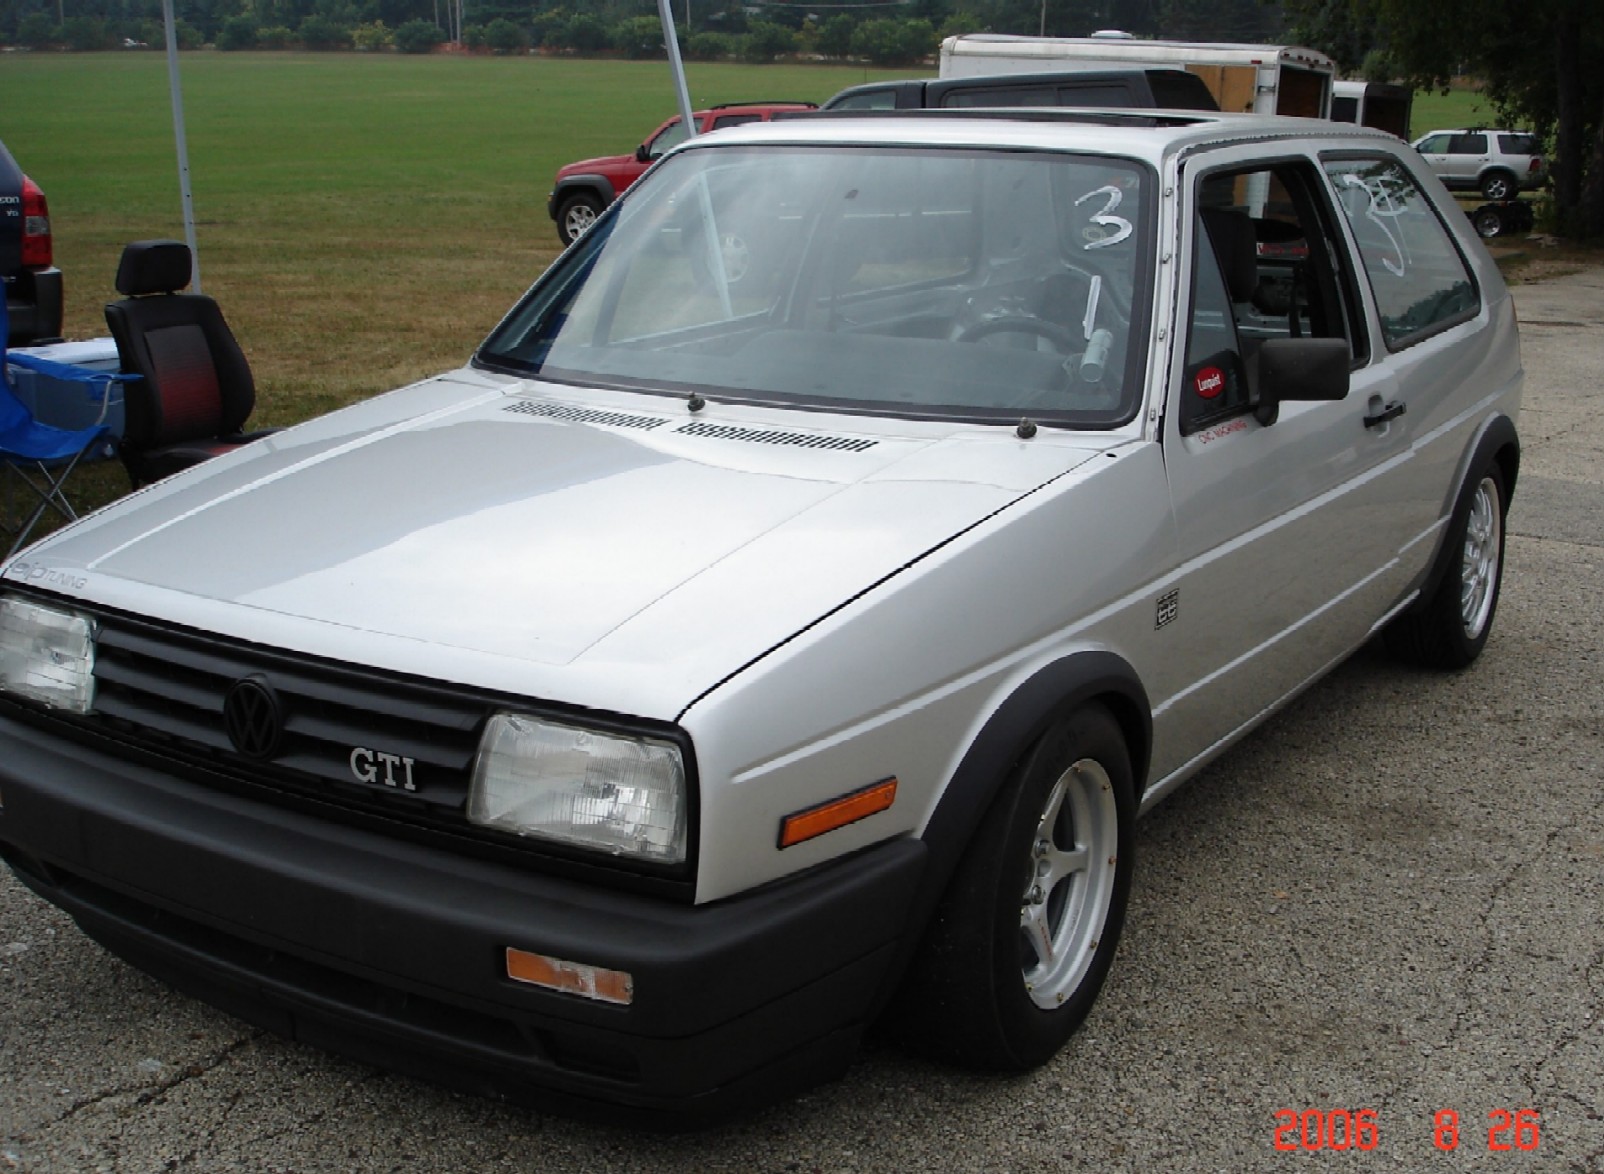  1985 Volkswagen GTI 